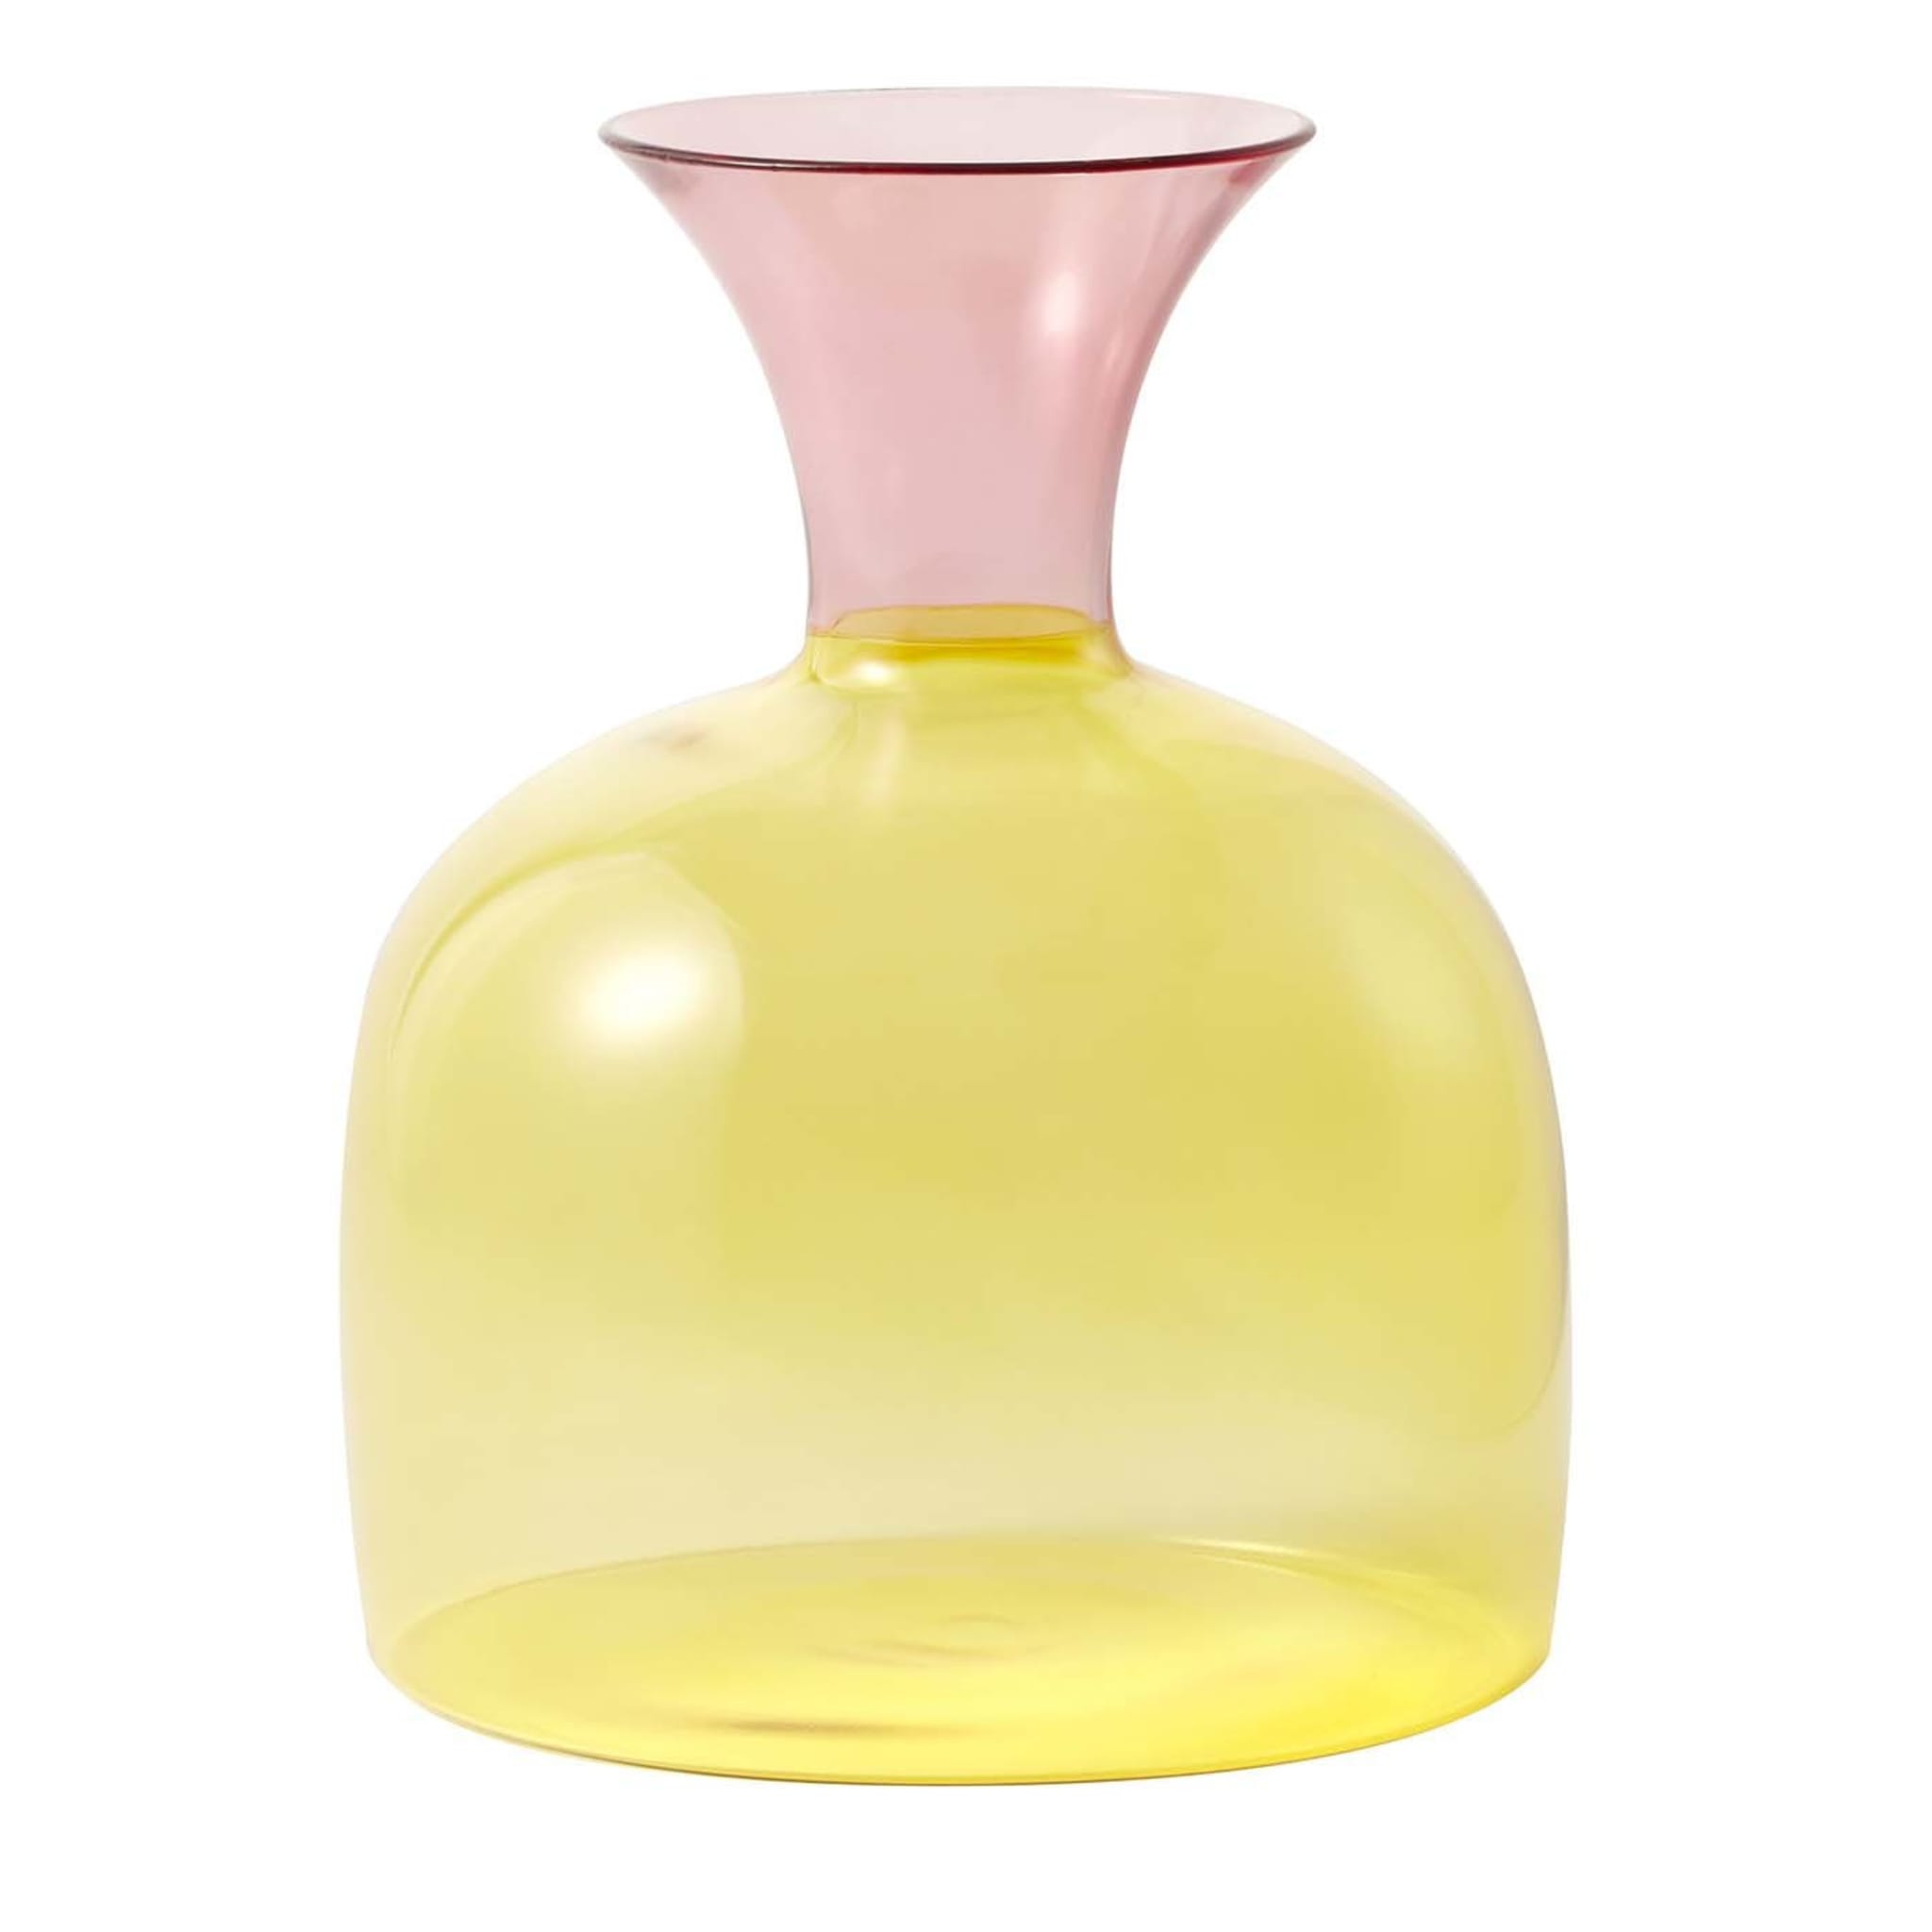 Carafe en verre jaune et rose Karaffa d'Aldo Cibic - Vue principale